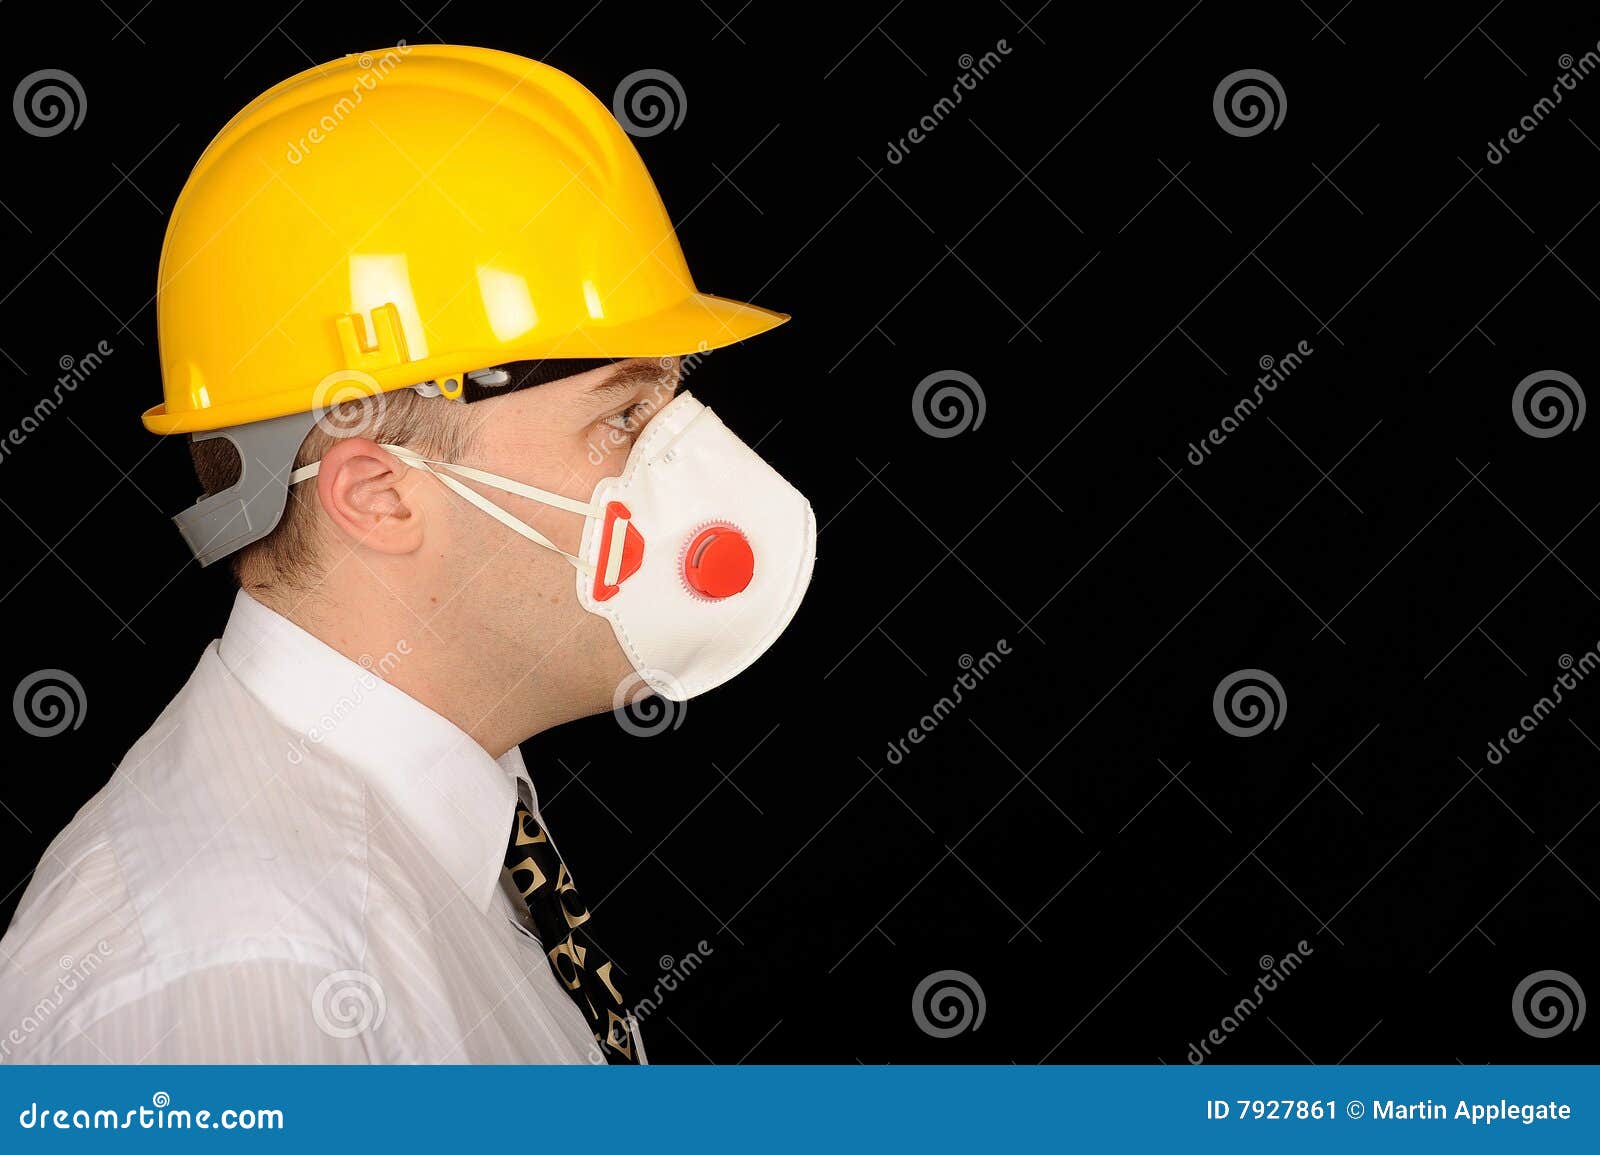 workman wearing mask